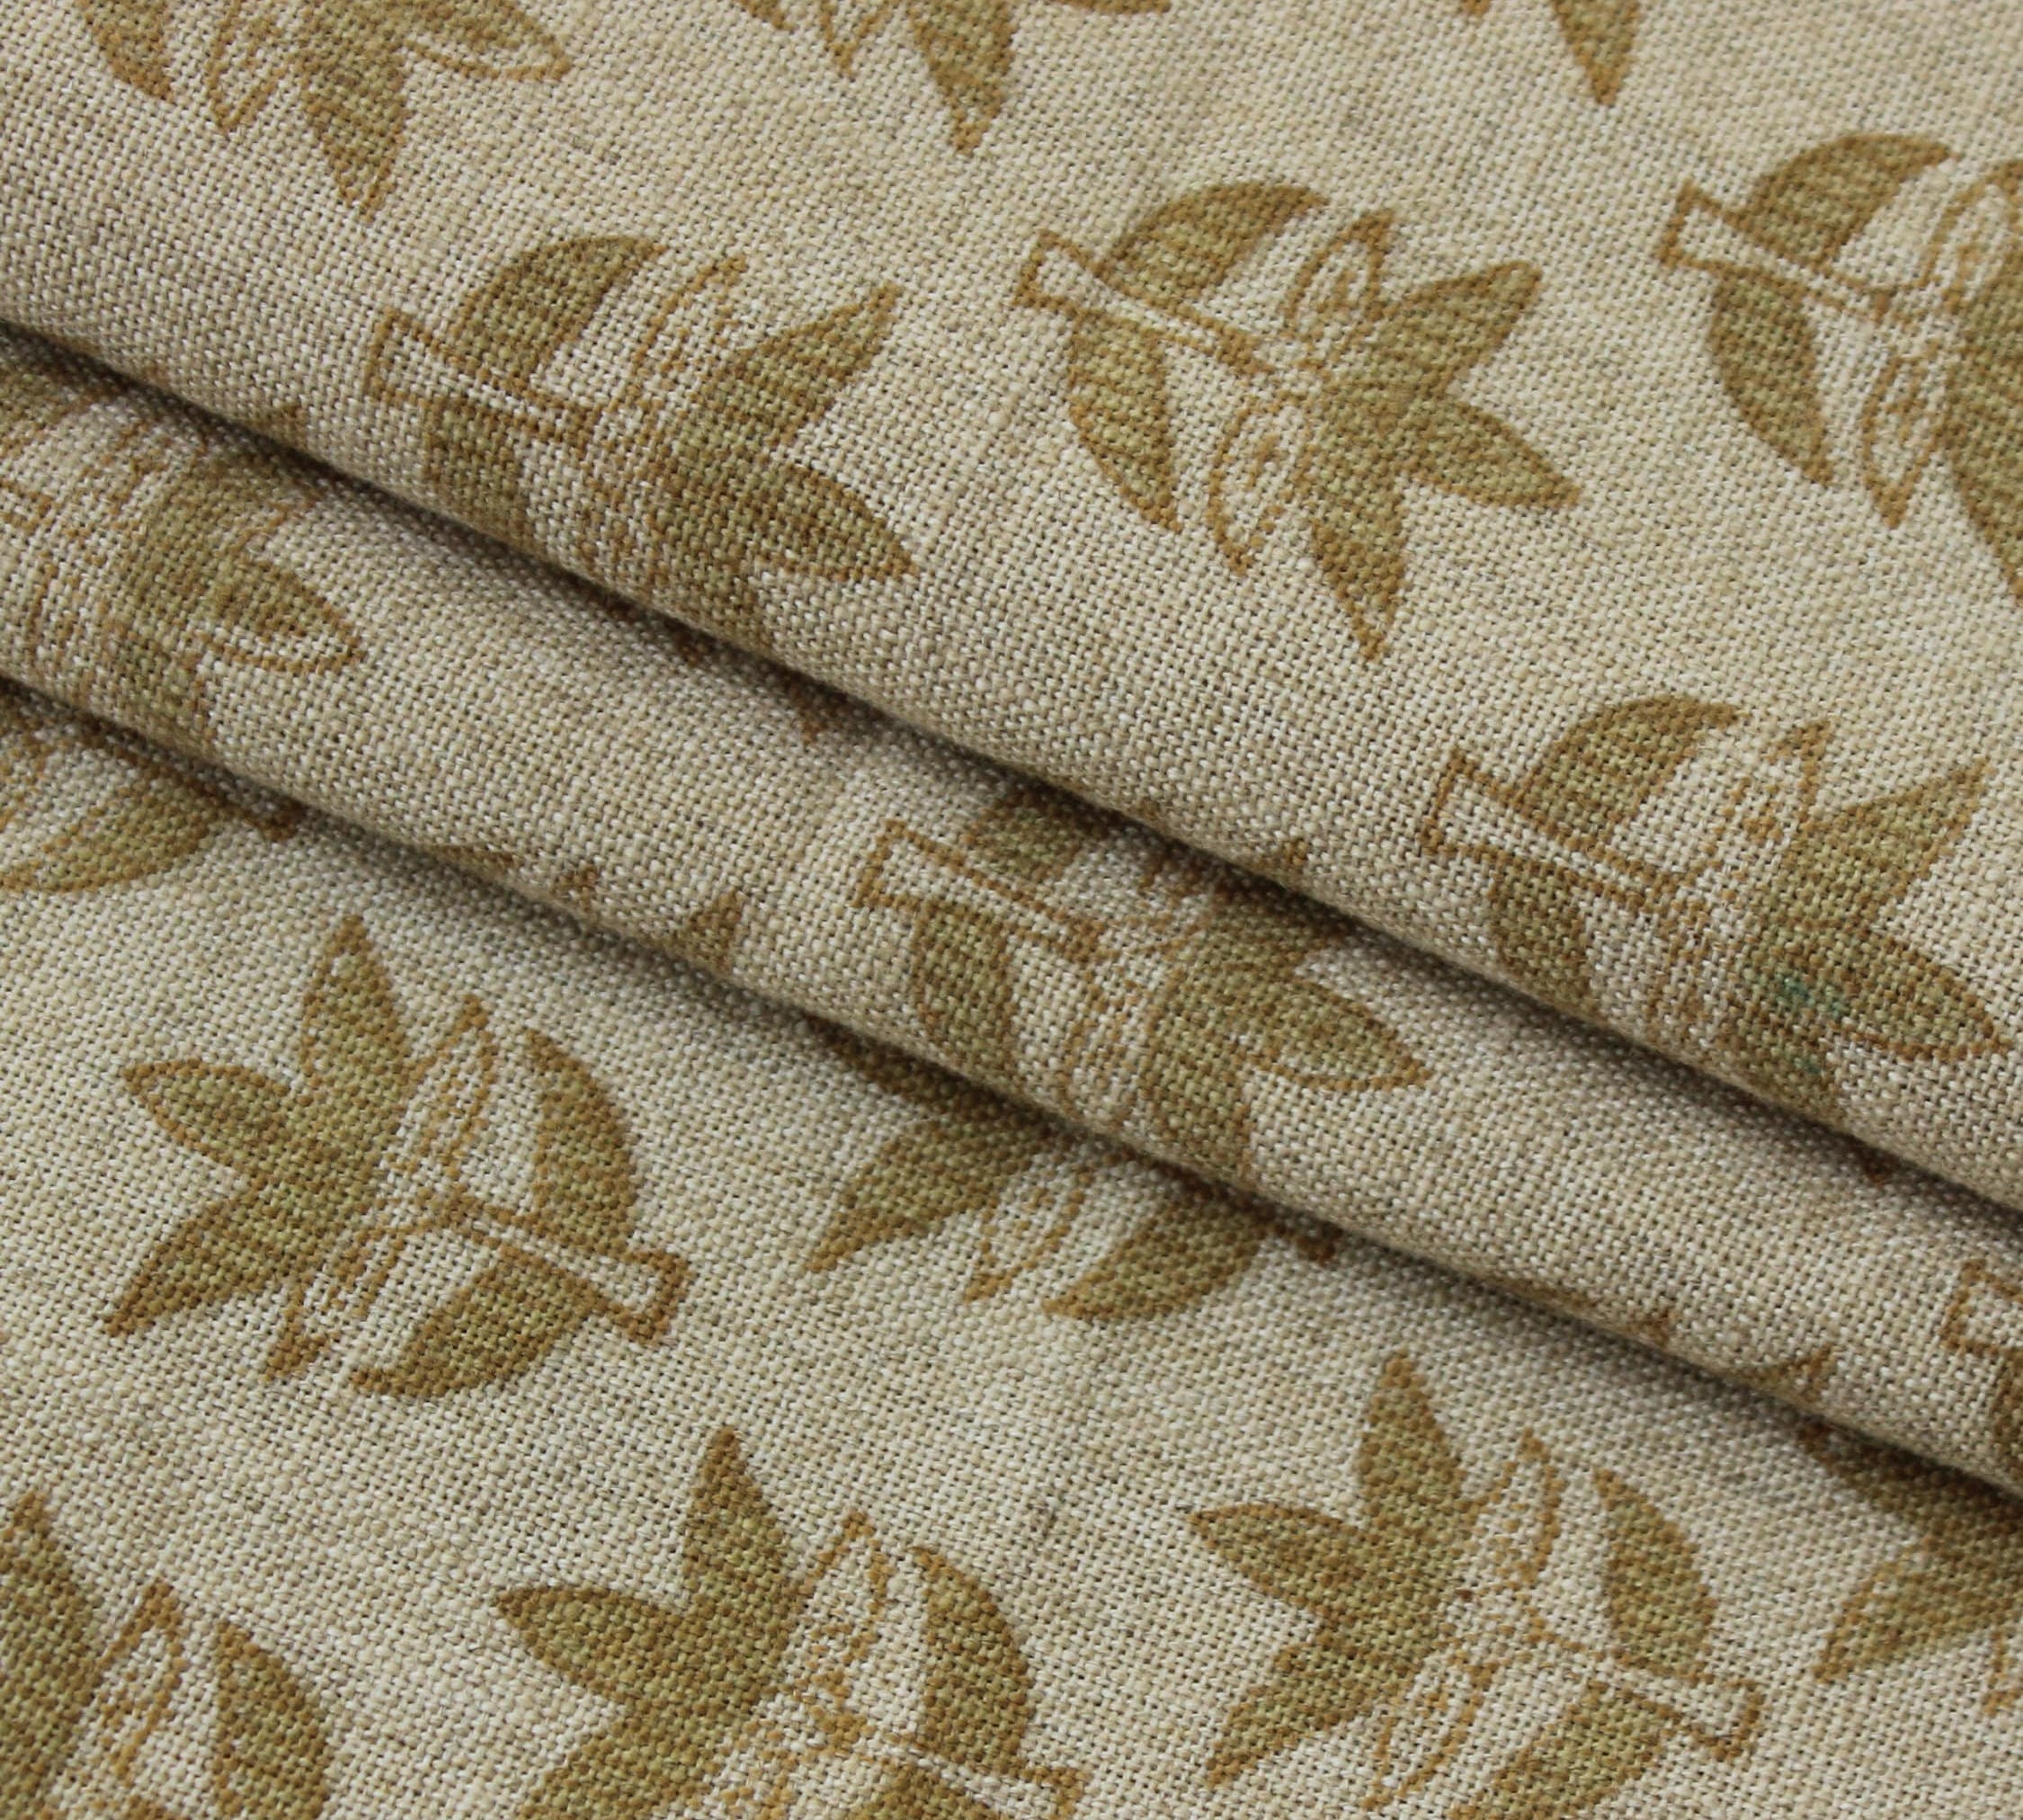 Block Print Linen Fabric, Saapt Patti "Floralprint Linen: Thick Blockprint, Home Decor, Curtains & Cloths, Handcrafted Linen Fabric"